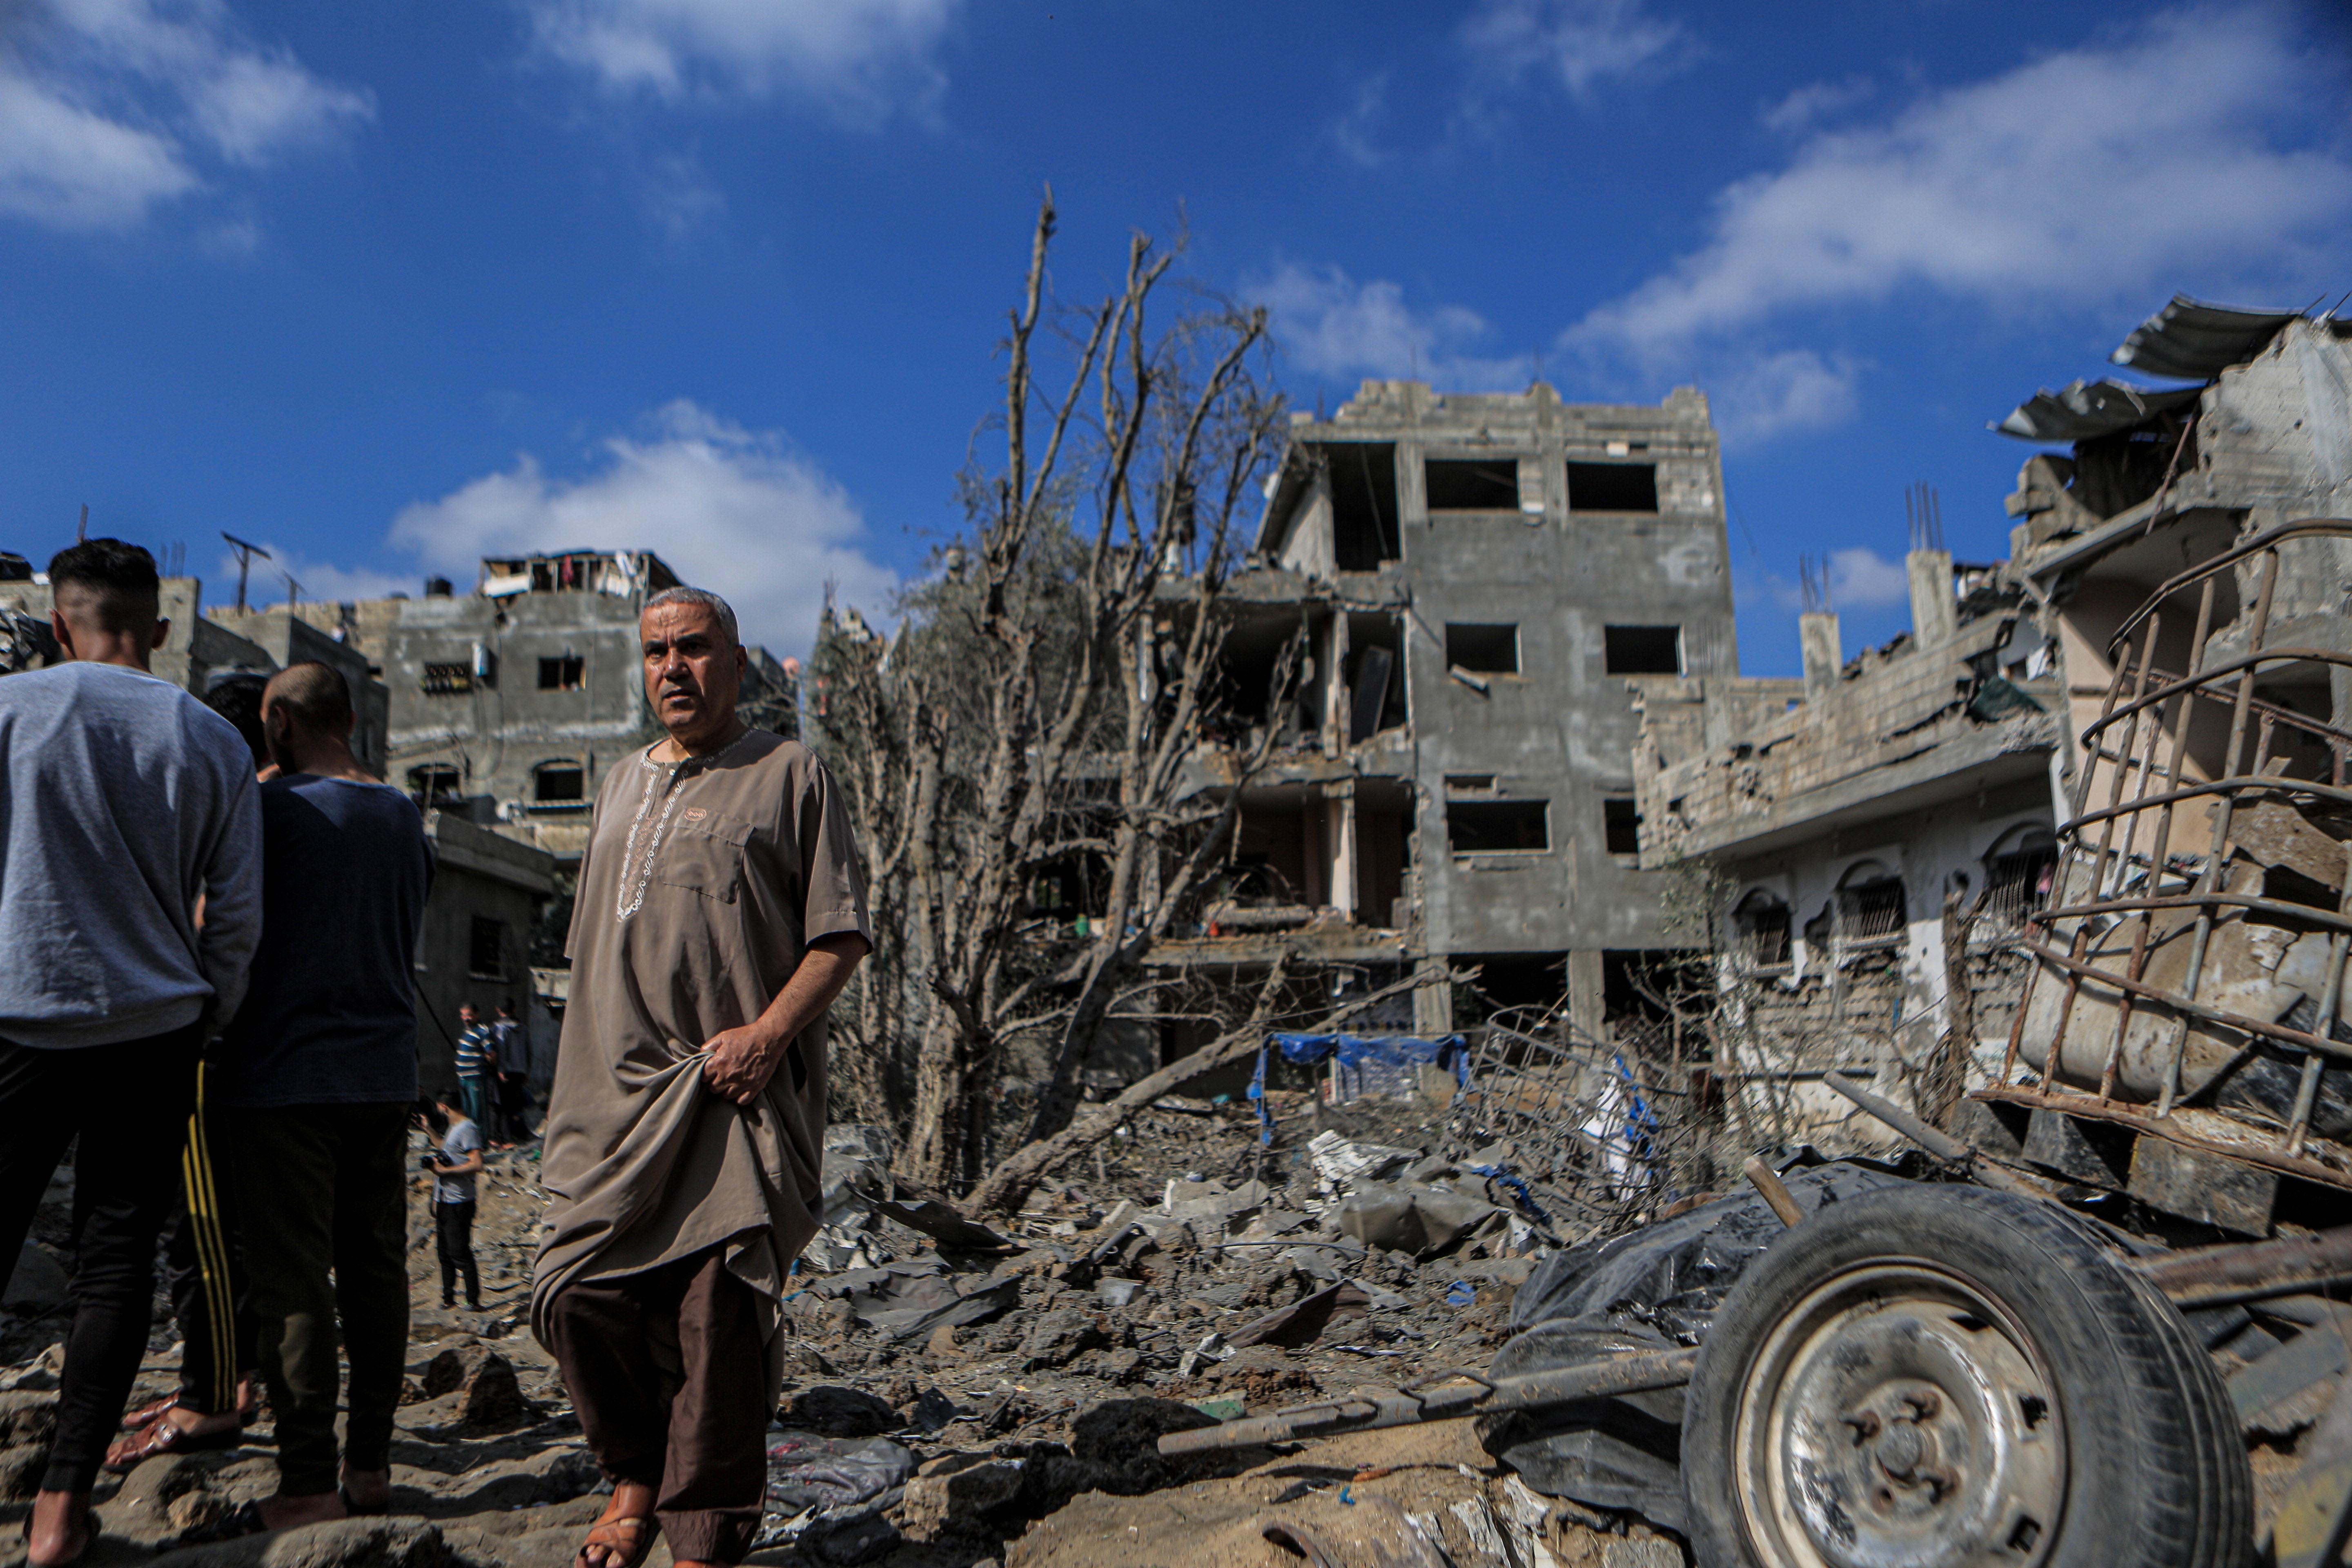 Filistin halkının, bombalanan evlerinin enkazı üzerinde durduğu anlar görüntülere yansıdı